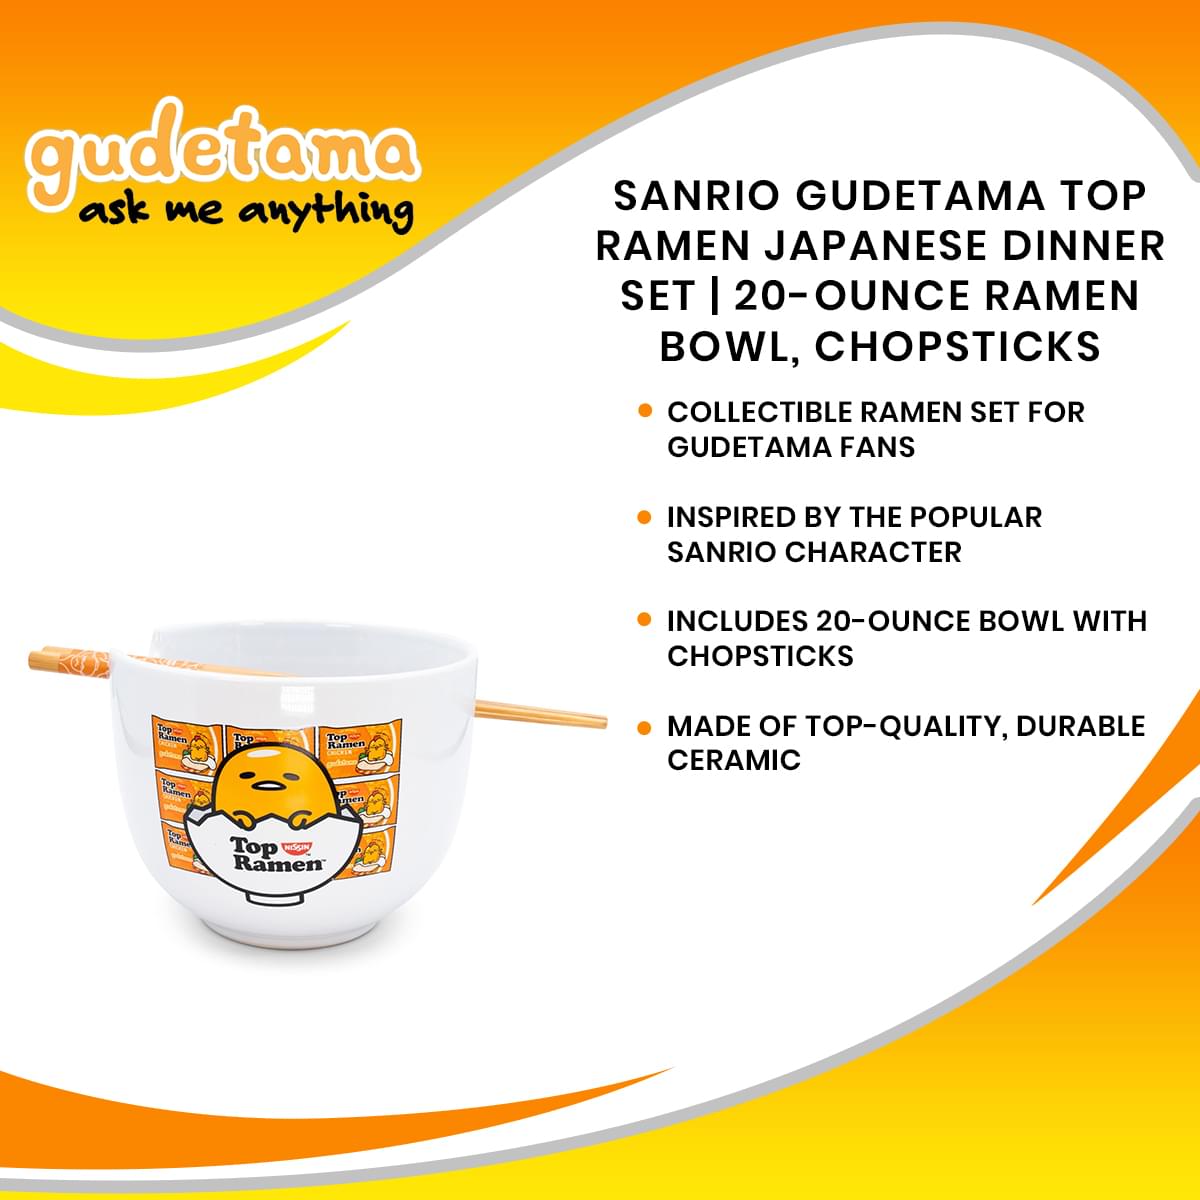 Sanrio Gudetama Top Ramen Japanese Dinner Set | 20-Ounce Ramen Bowl, Chopsticks